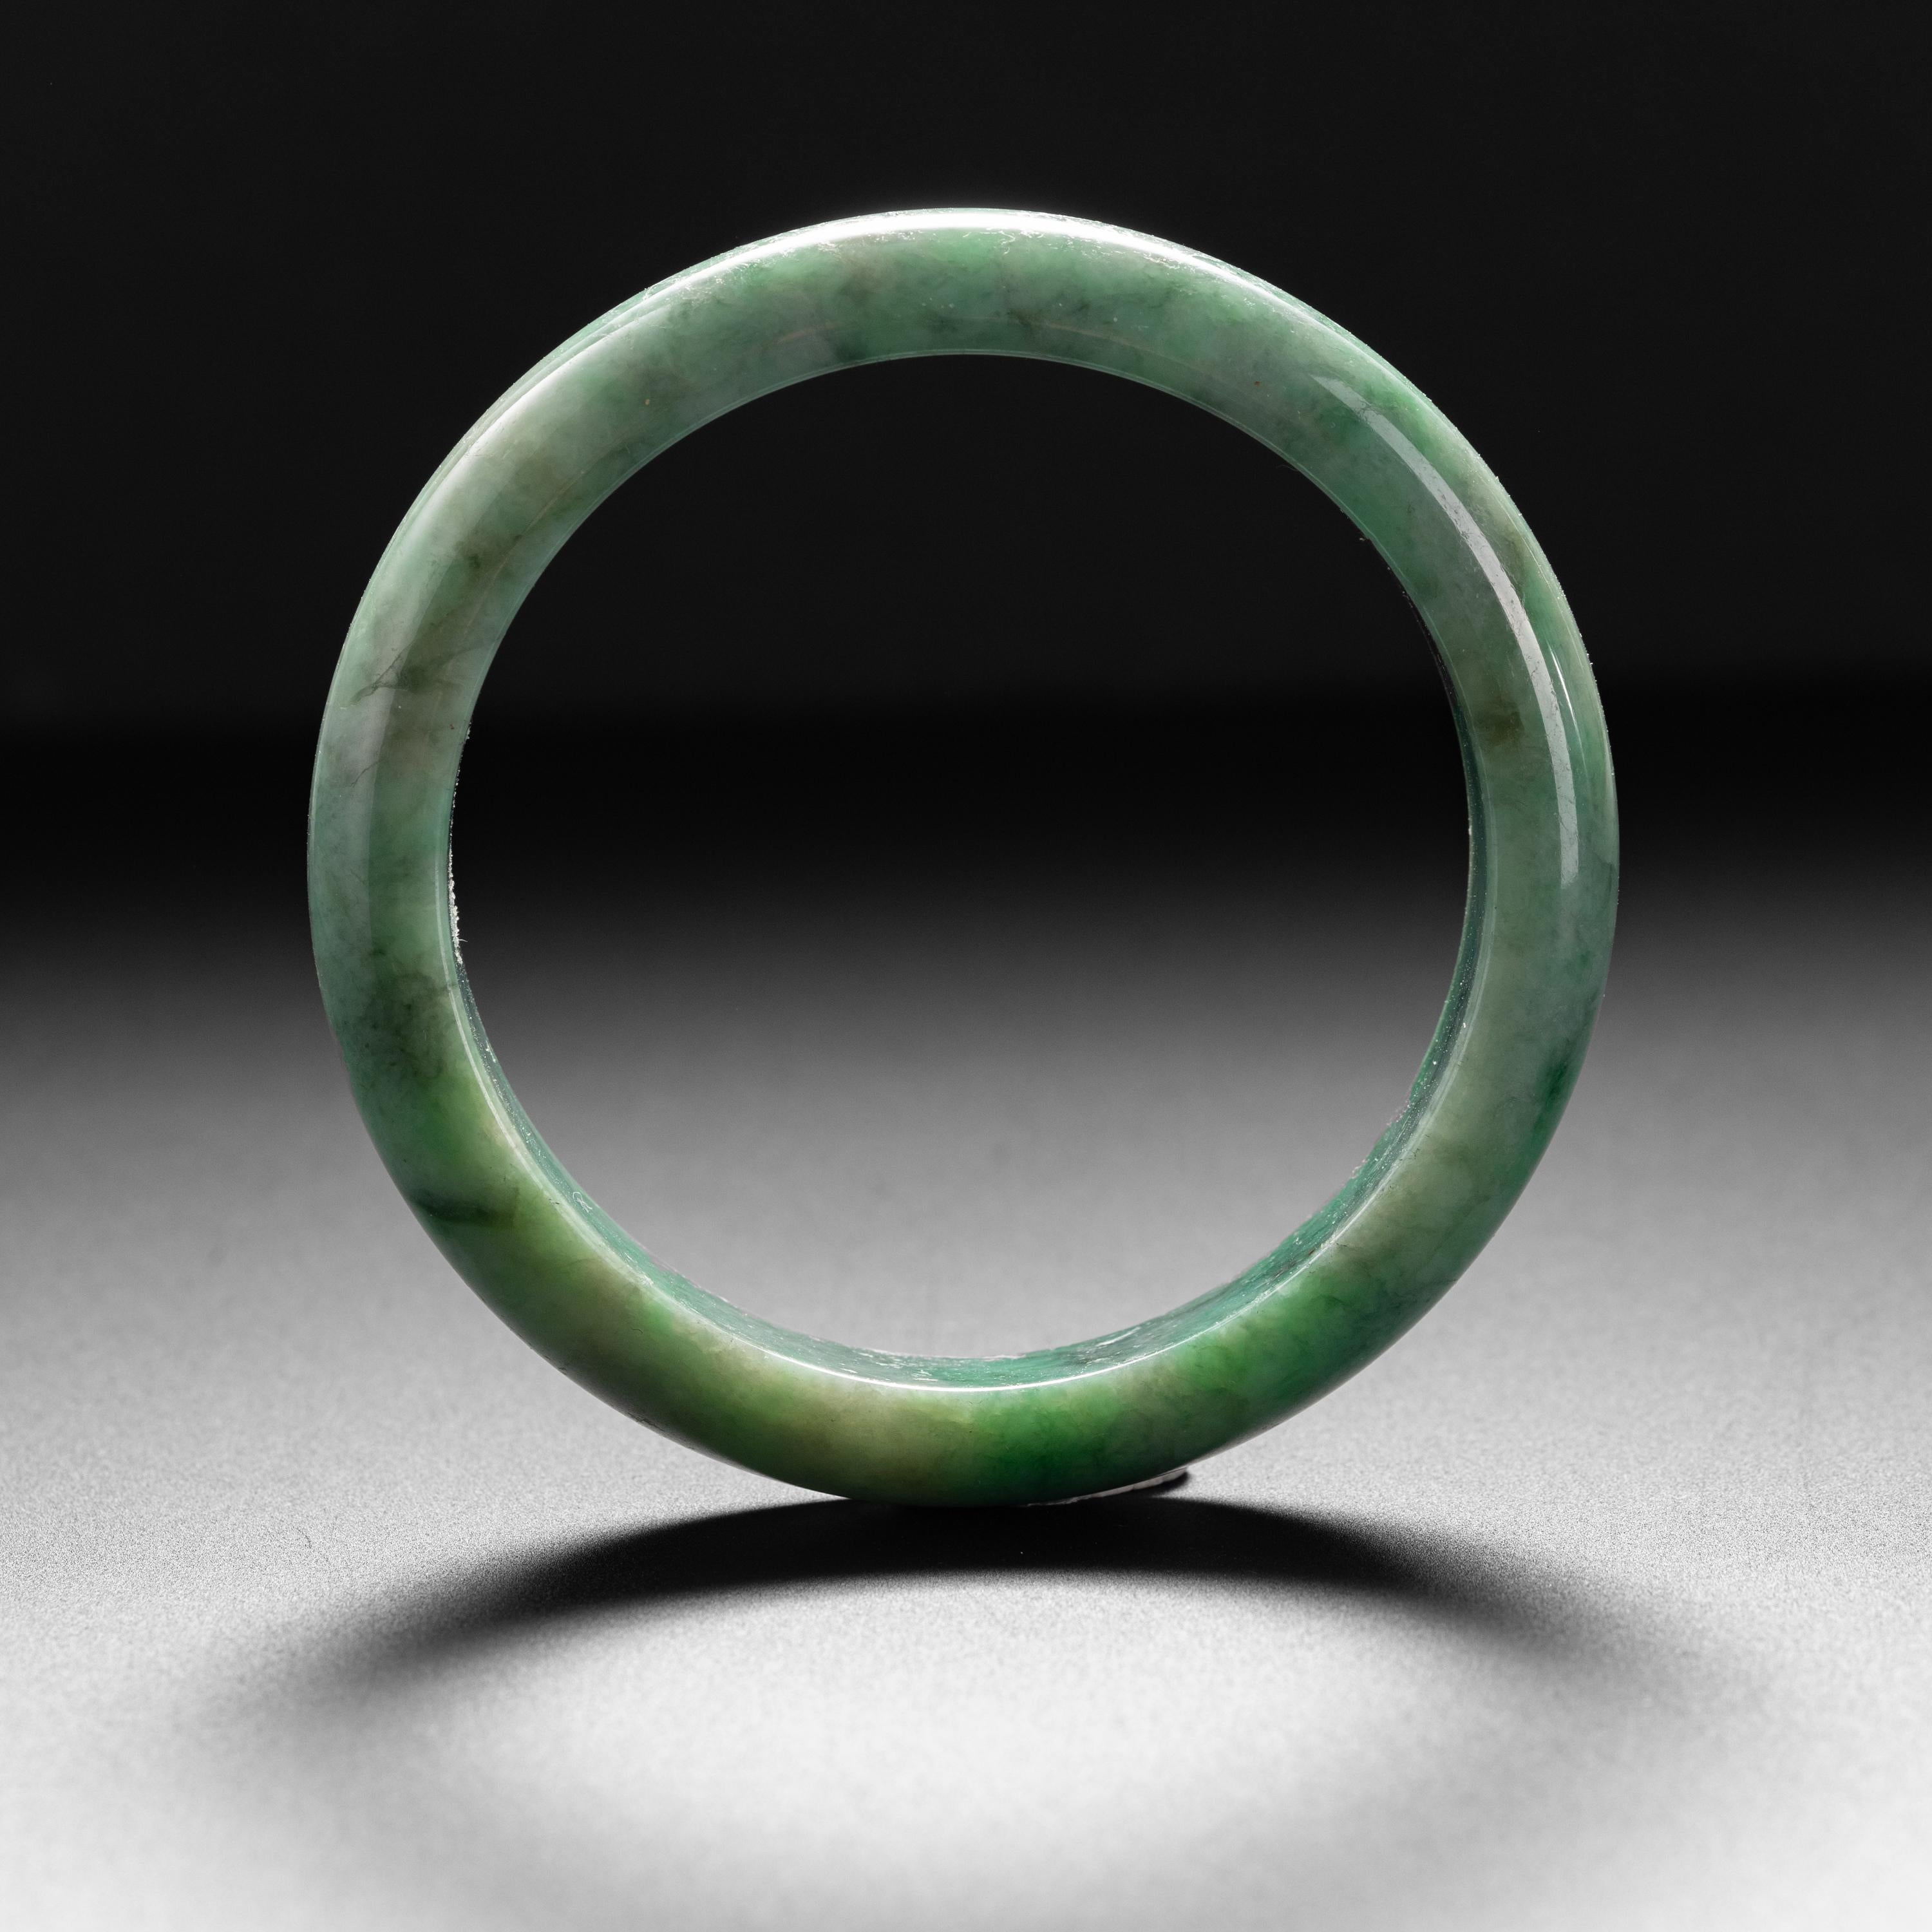 jade bangle bracelet meaning